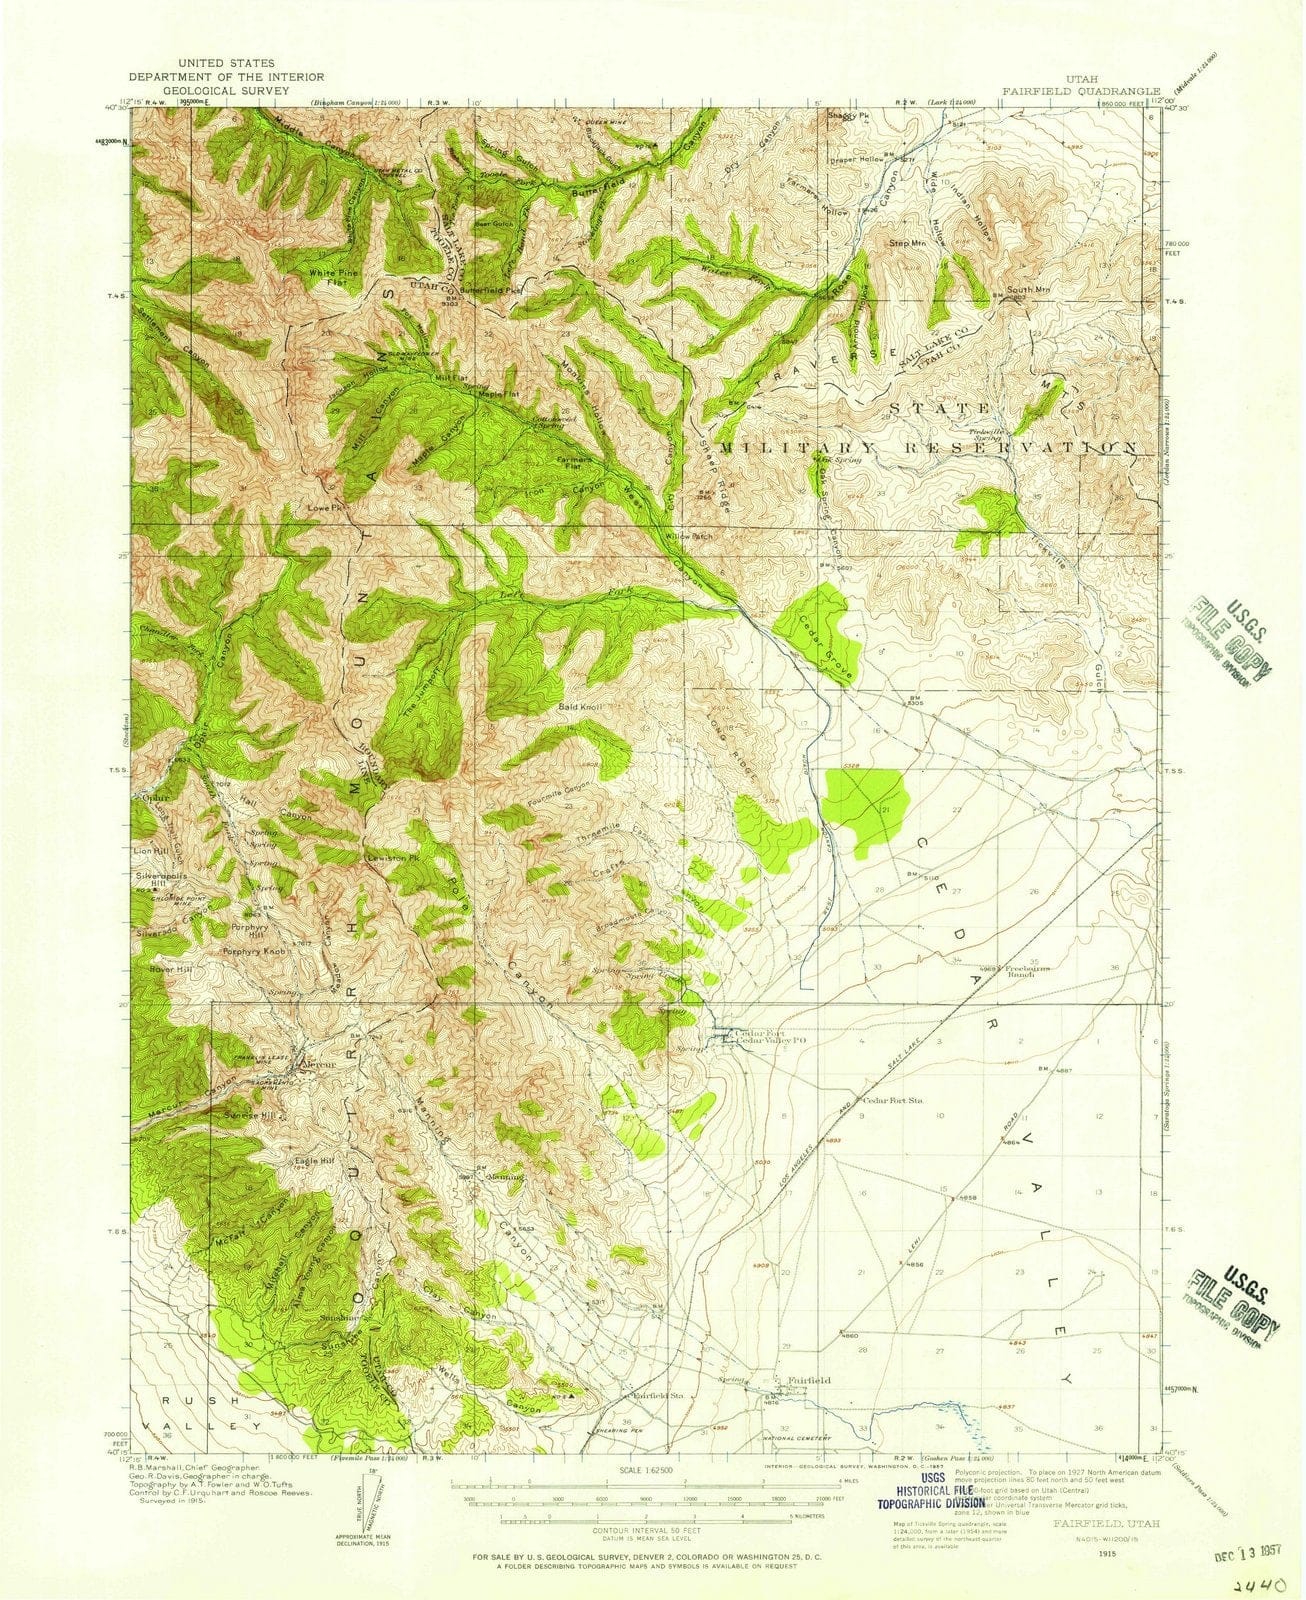 1915 Fairfield, UT - Utah - USGS Topographic Map